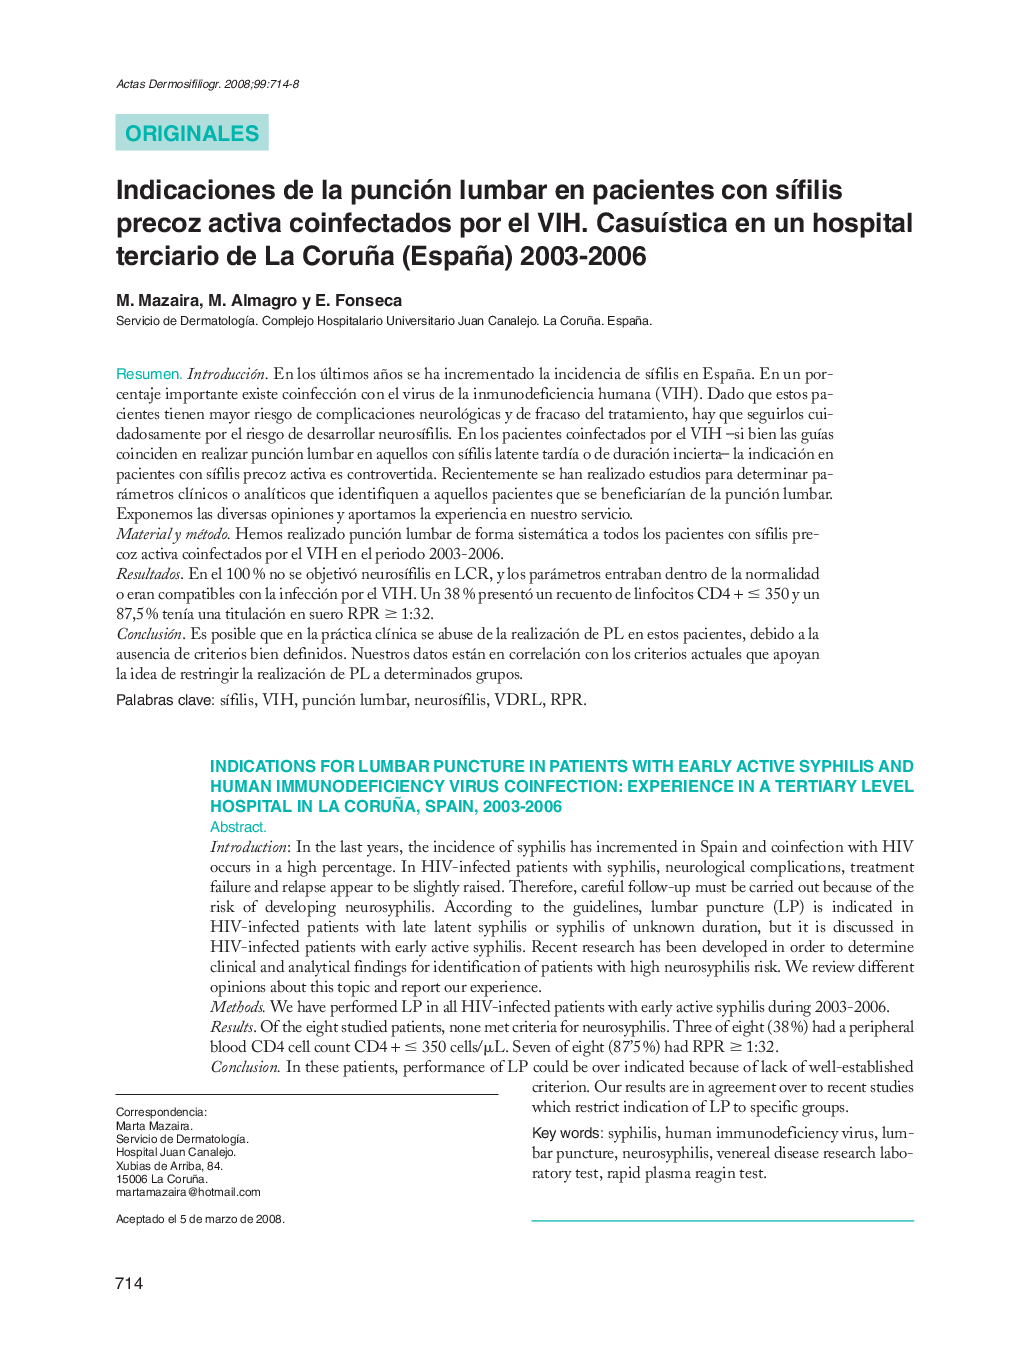 Indicaciones de la punción lumbar en pacientes con sífilis precoz activa coinfectados por el VIH. Casuística en un hospital terciario de La Coruña (España) 2003-2006